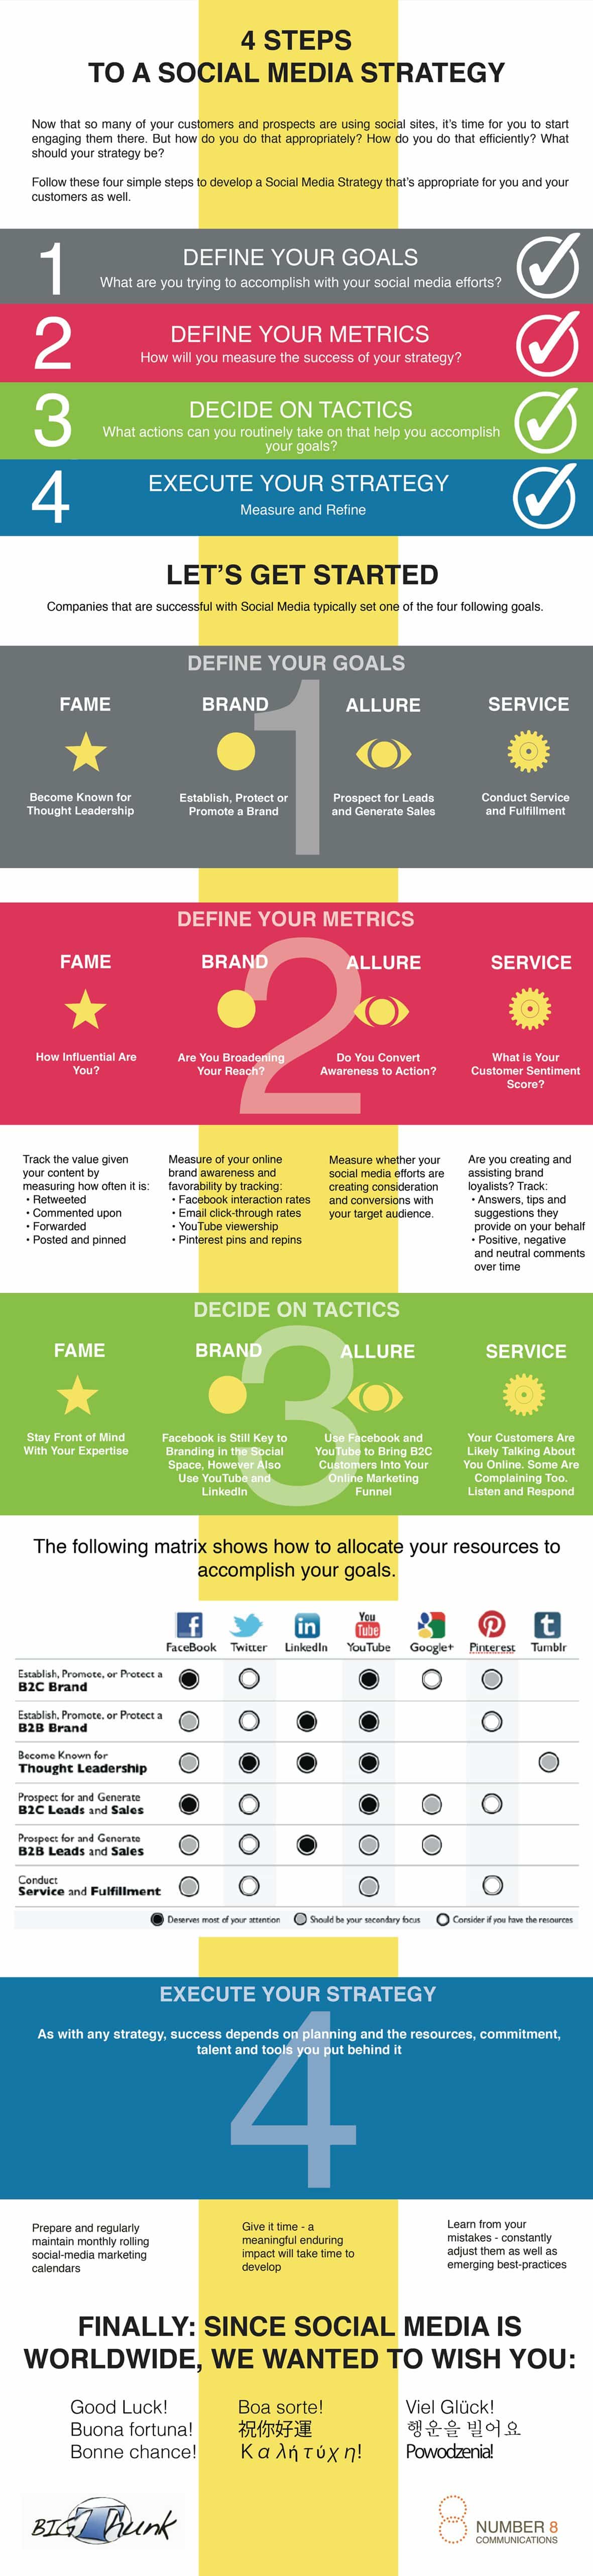 4-steps-social-media-strategy